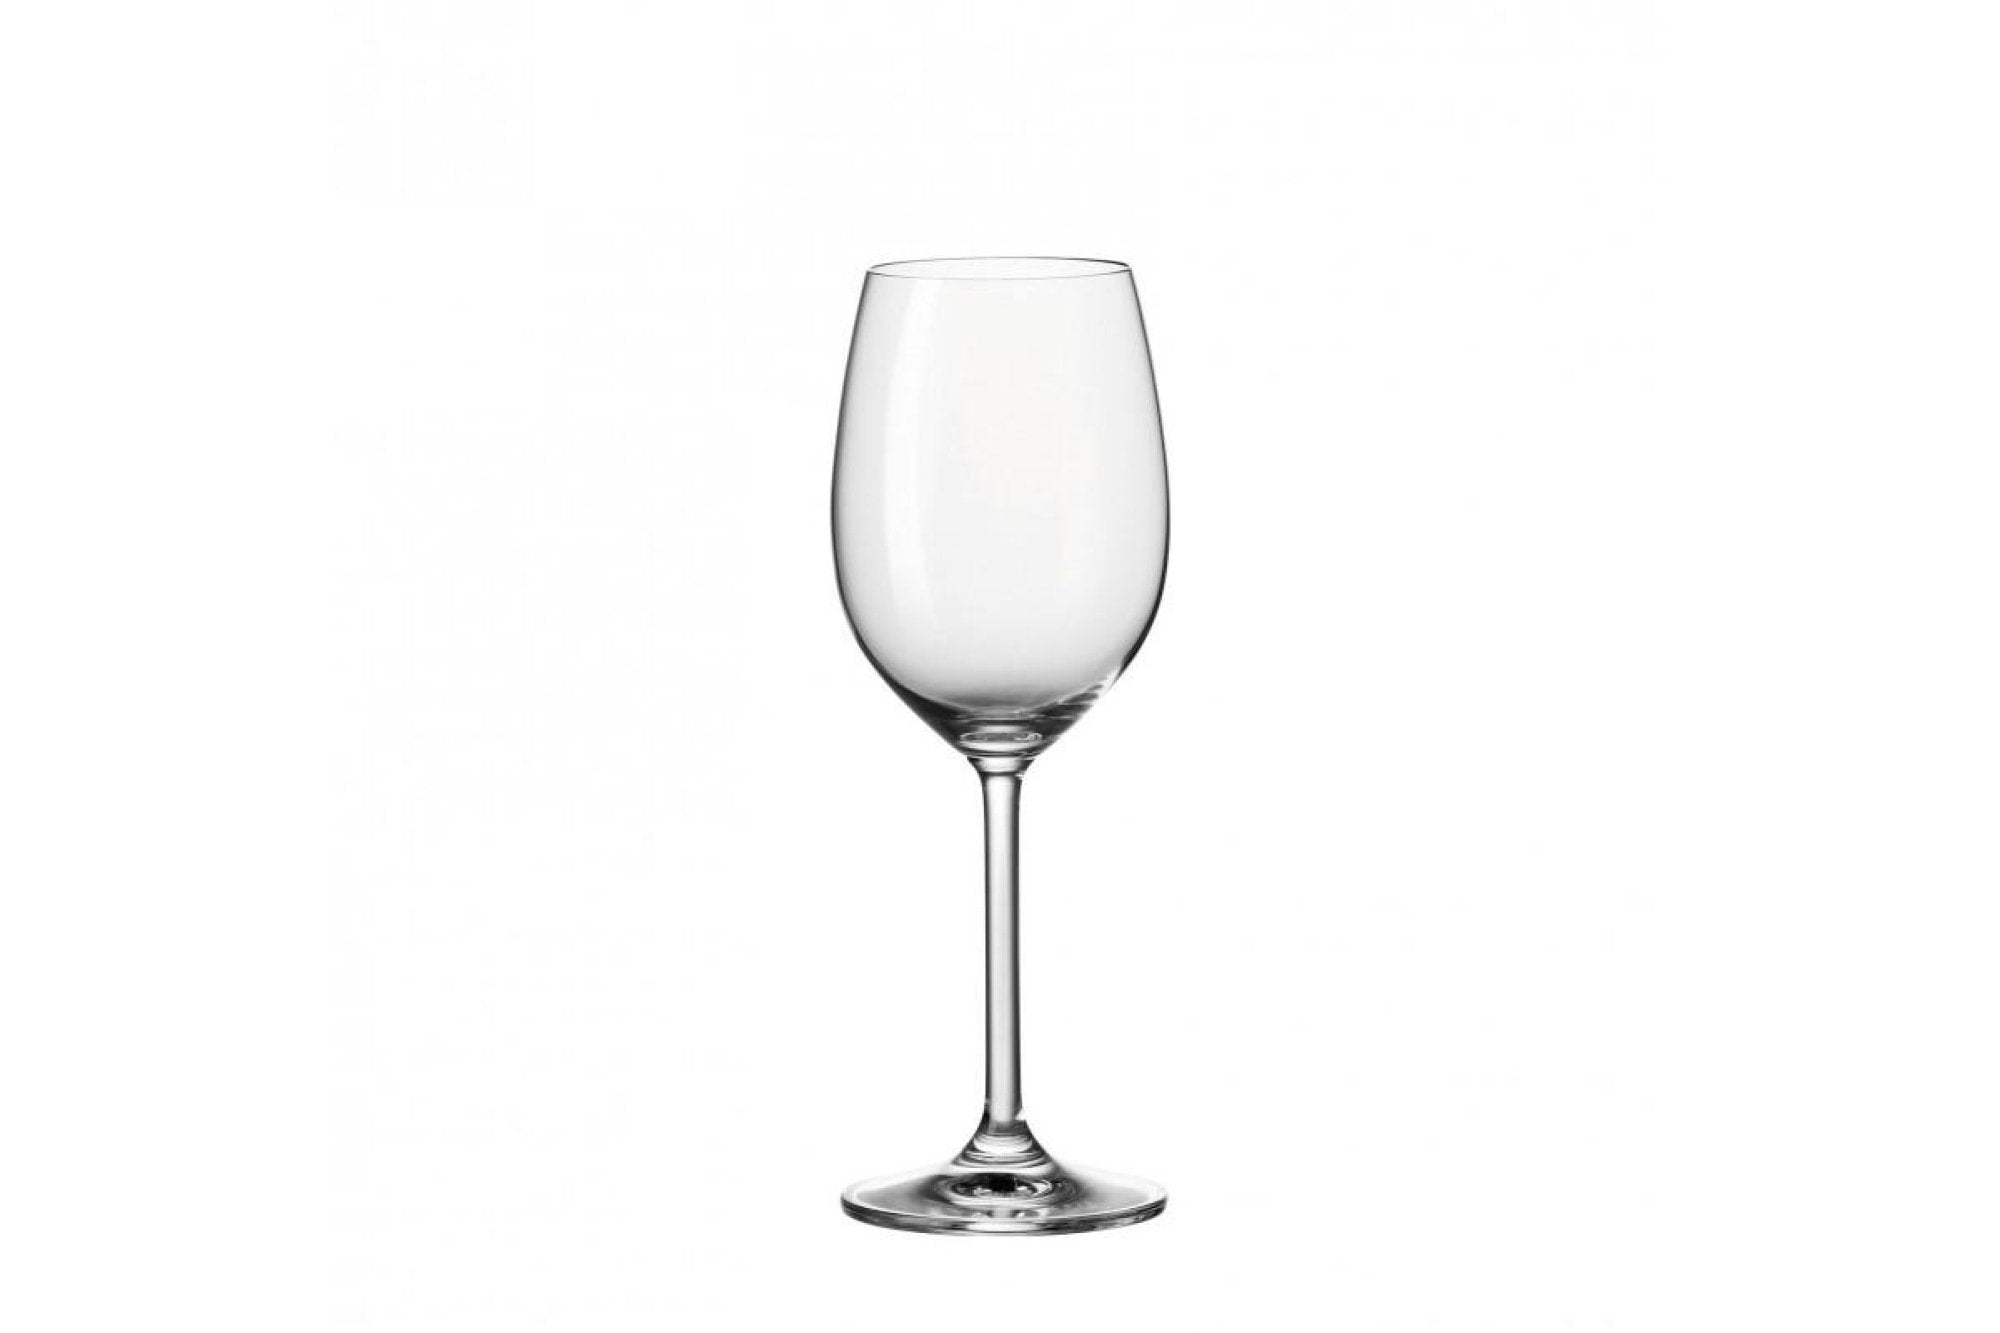 Fehérboros pohár - DAILY pohár fehérboros 370ml - Leonardo